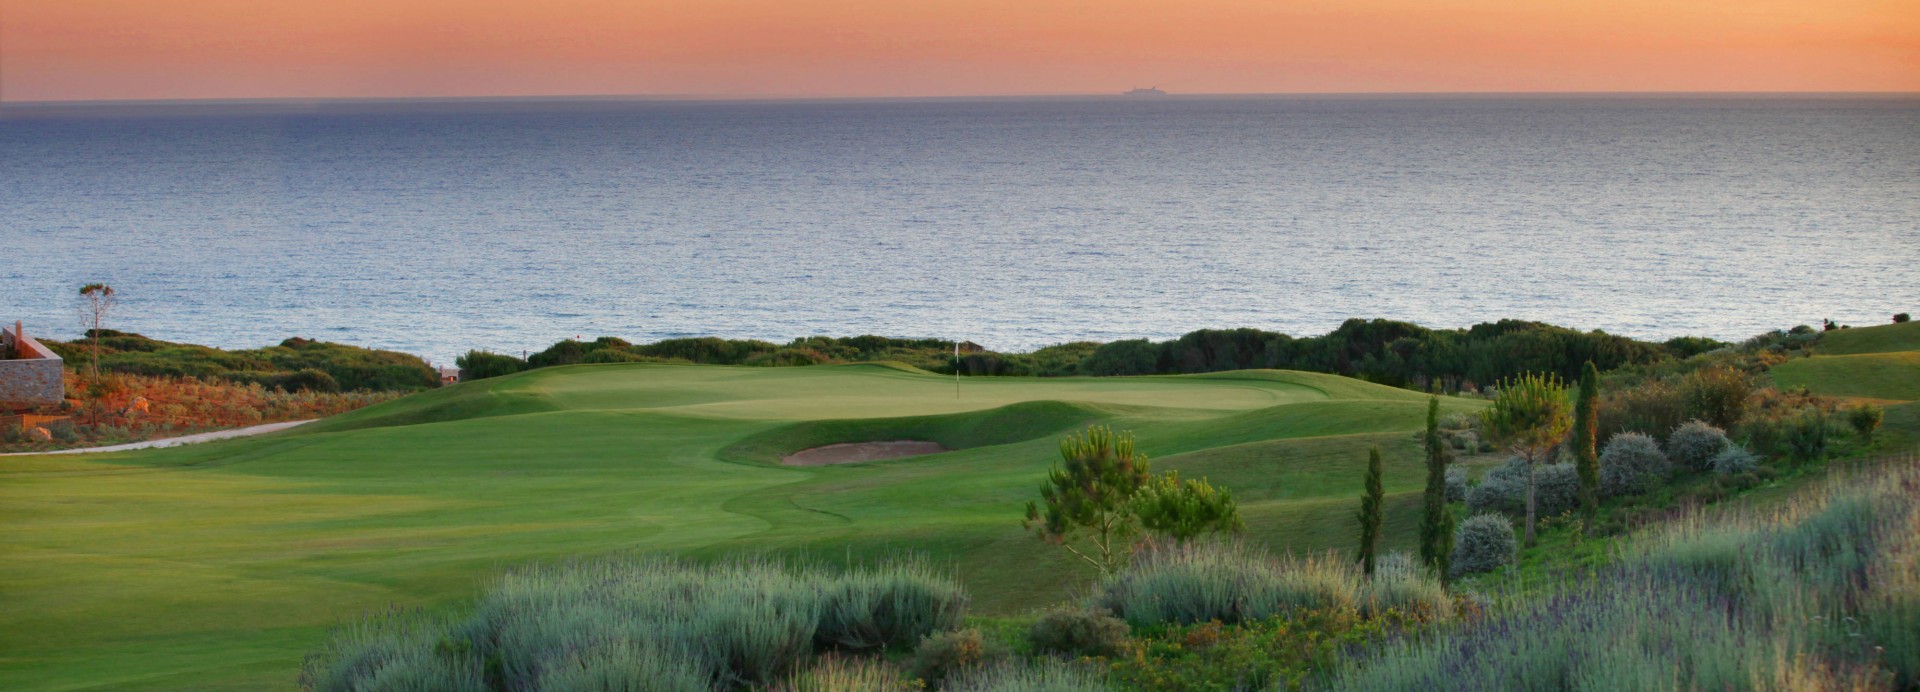 Costa Navarino Dunes Course  | Golfové zájezdy, golfová dovolená, luxusní golf